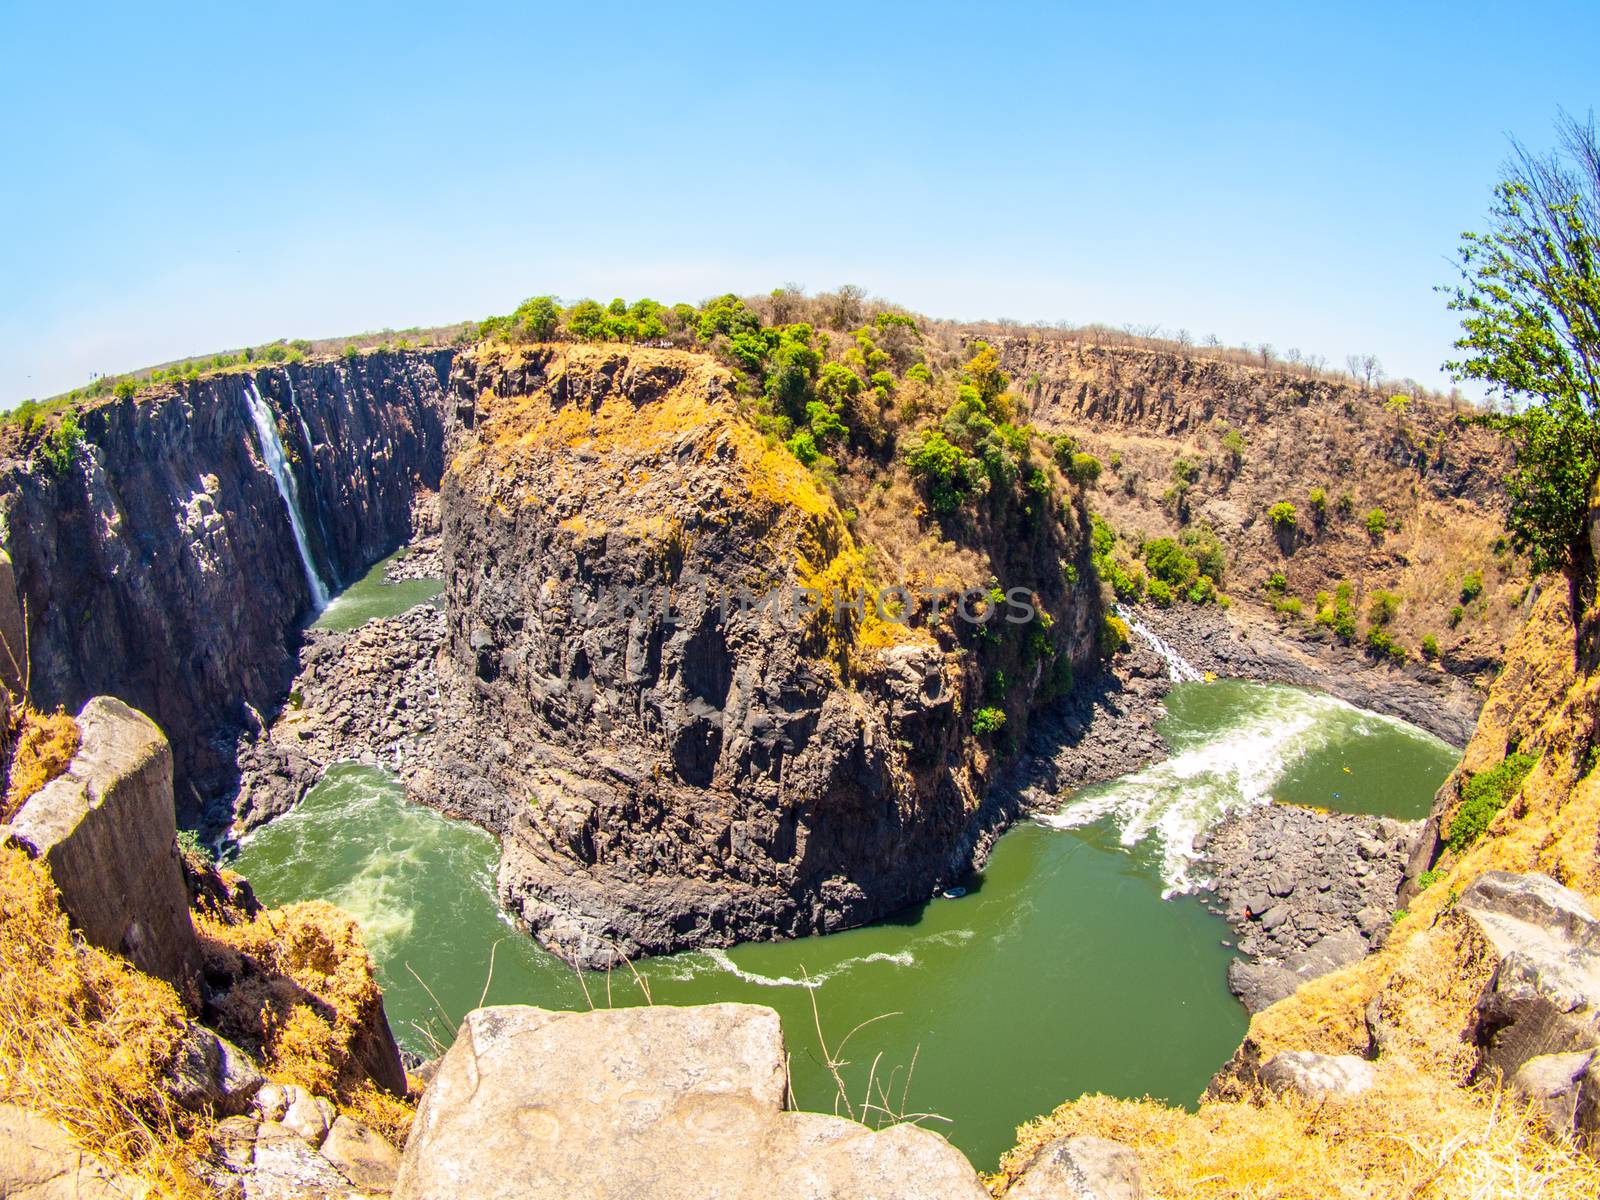 Victoria Falls on Zambezi River. Dry season. Border between Zimbabwe and Zambia, Africa. Fisheye shot by pyty